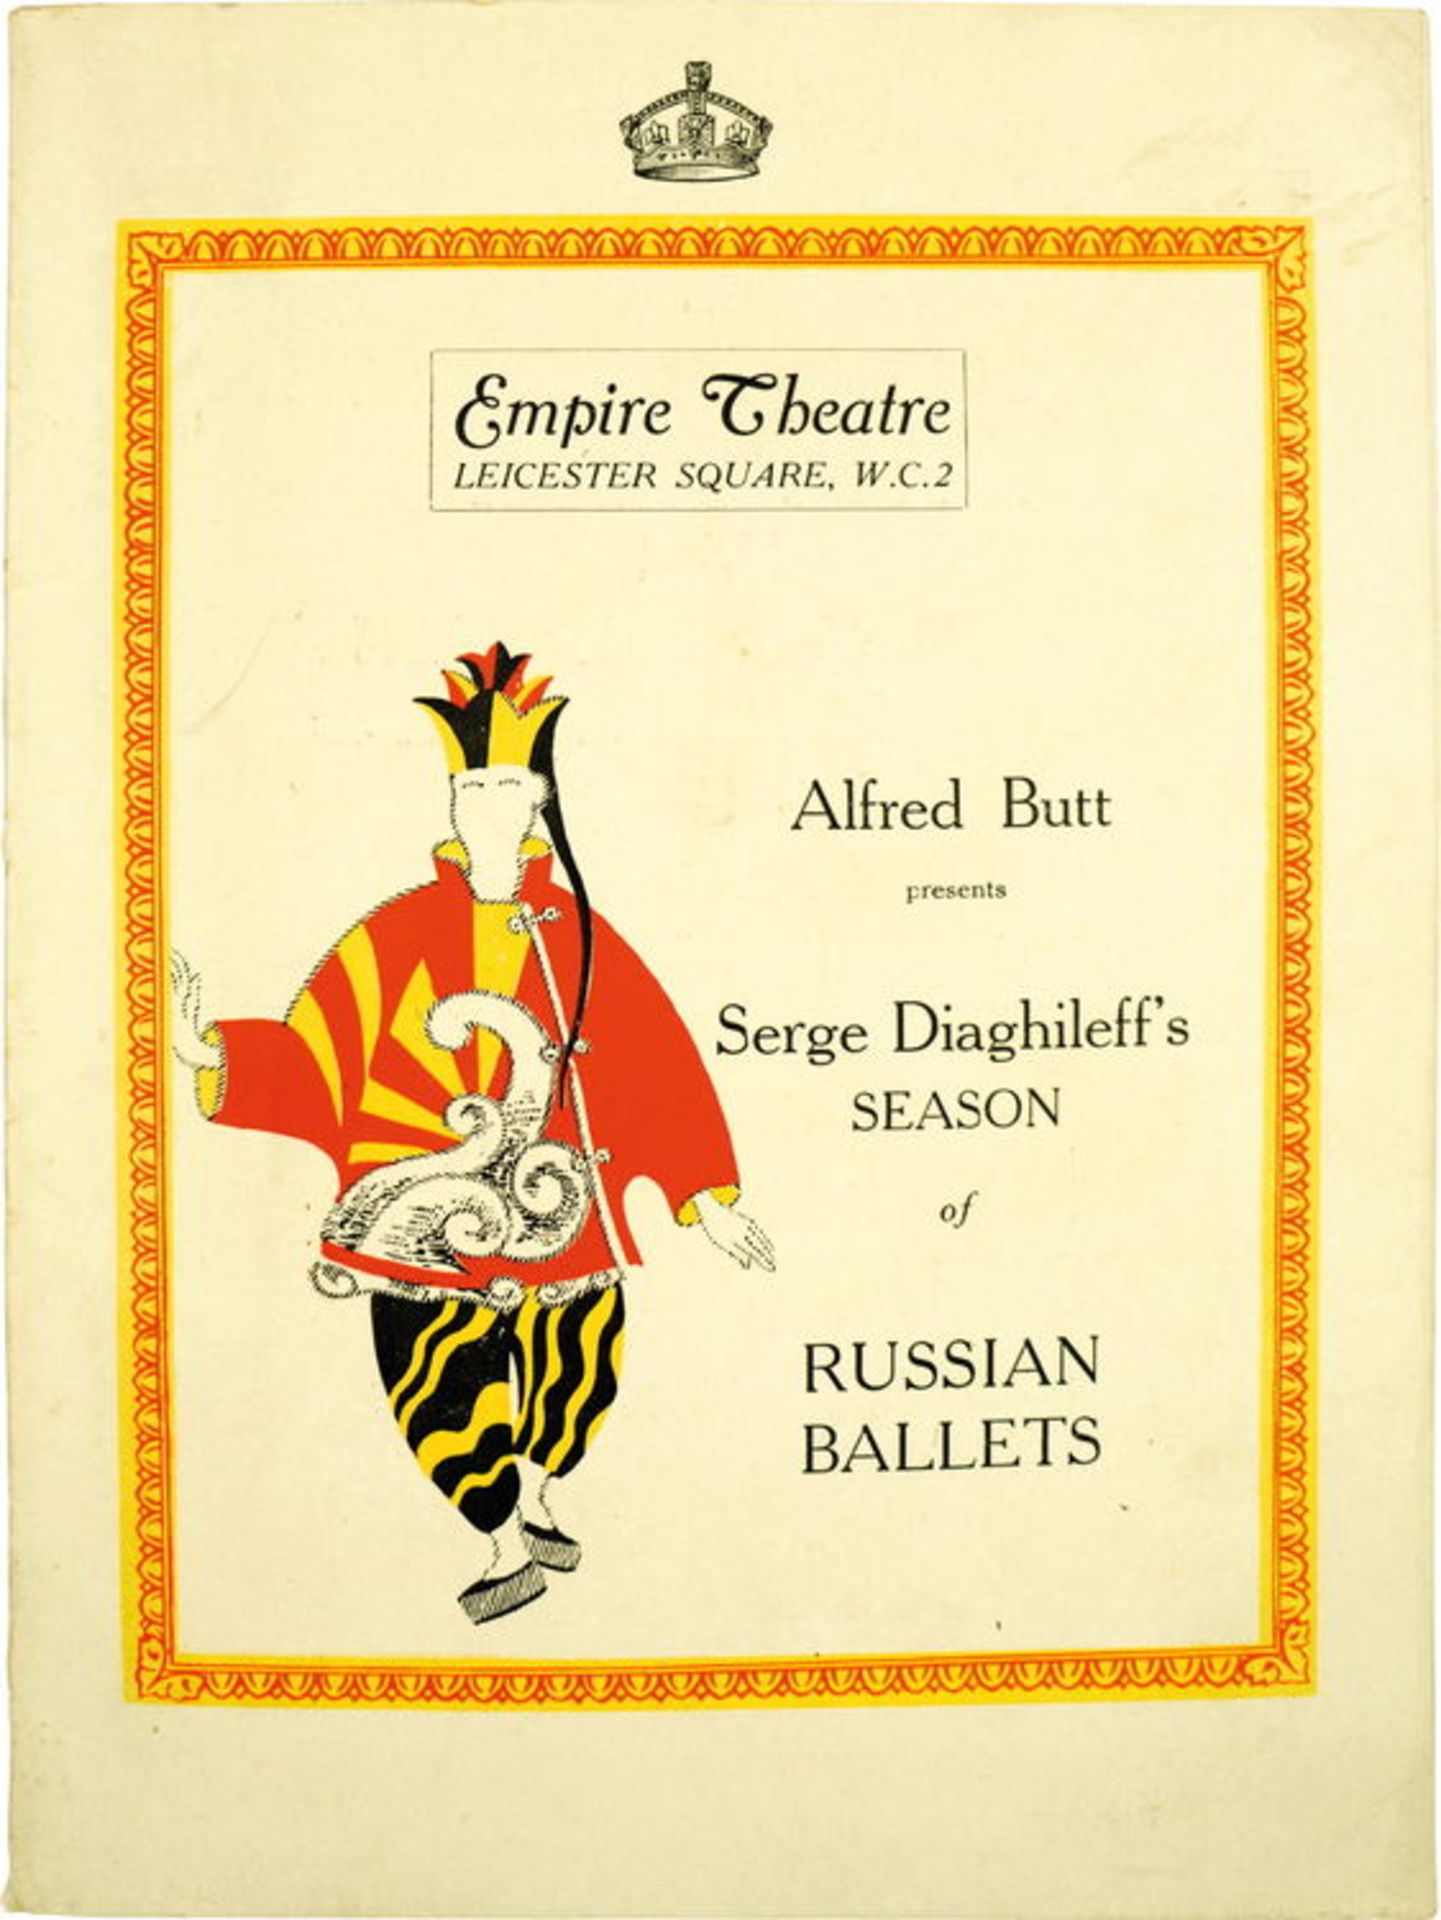 [BALLETS RUSSES, BAKST, PICASSO] Les Ballets Russes im Empire Theatre London, 1919. Programm vom